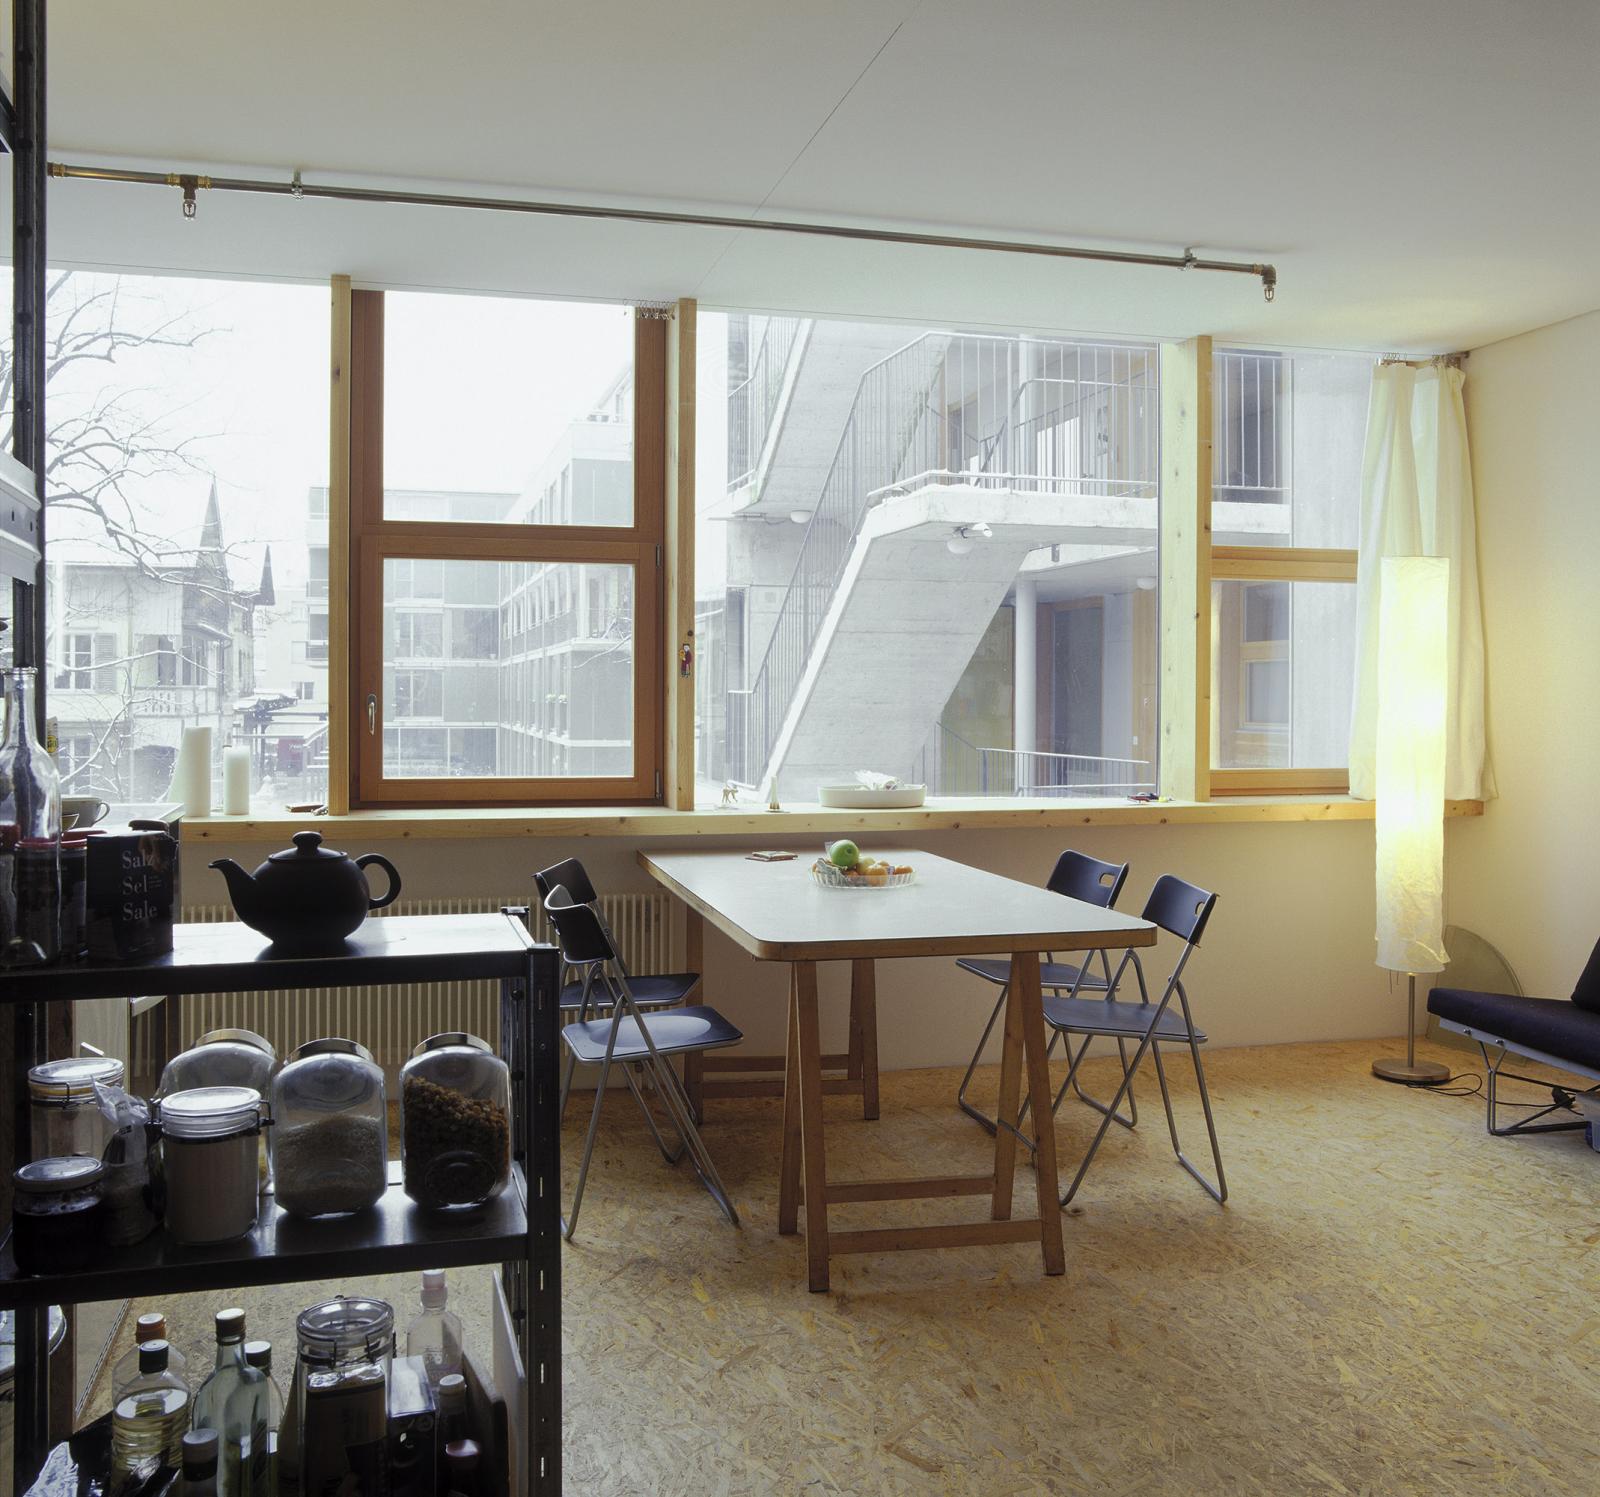 Wohnüberbauung Vordere Lorraine, Bern; Fotografie Gaston Wicky